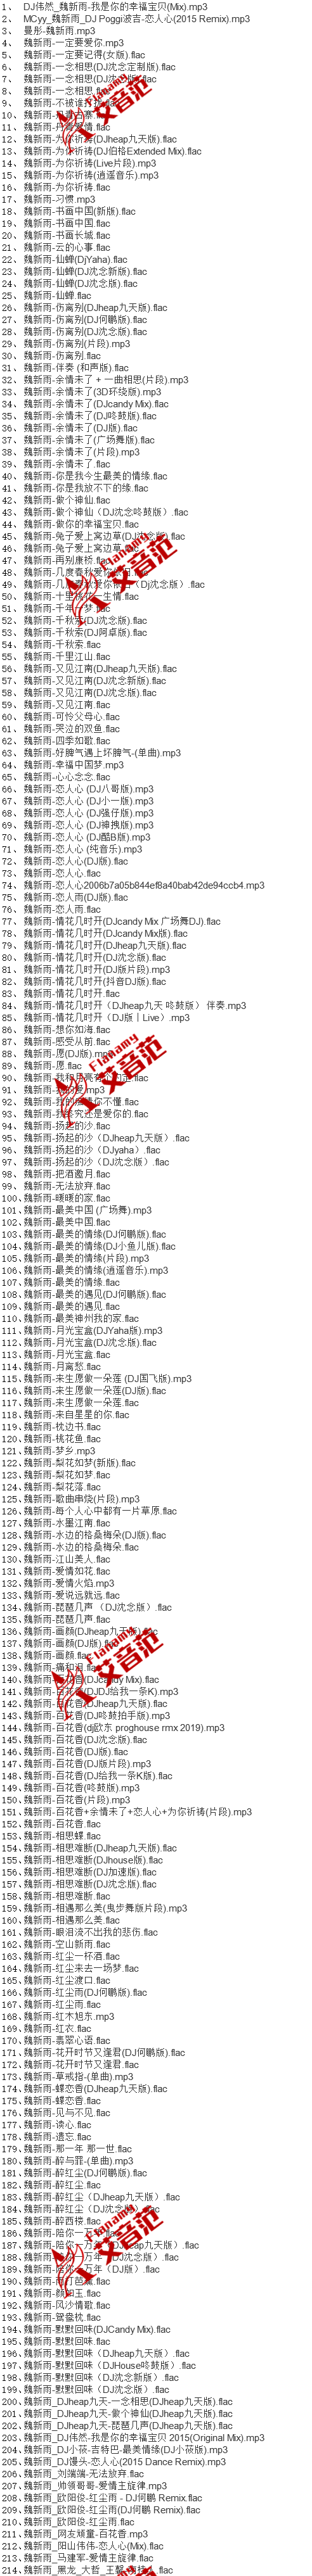 [百度云][2013-2021年][214首合集]《魏新雨》歌曲网盘下载-艾音范